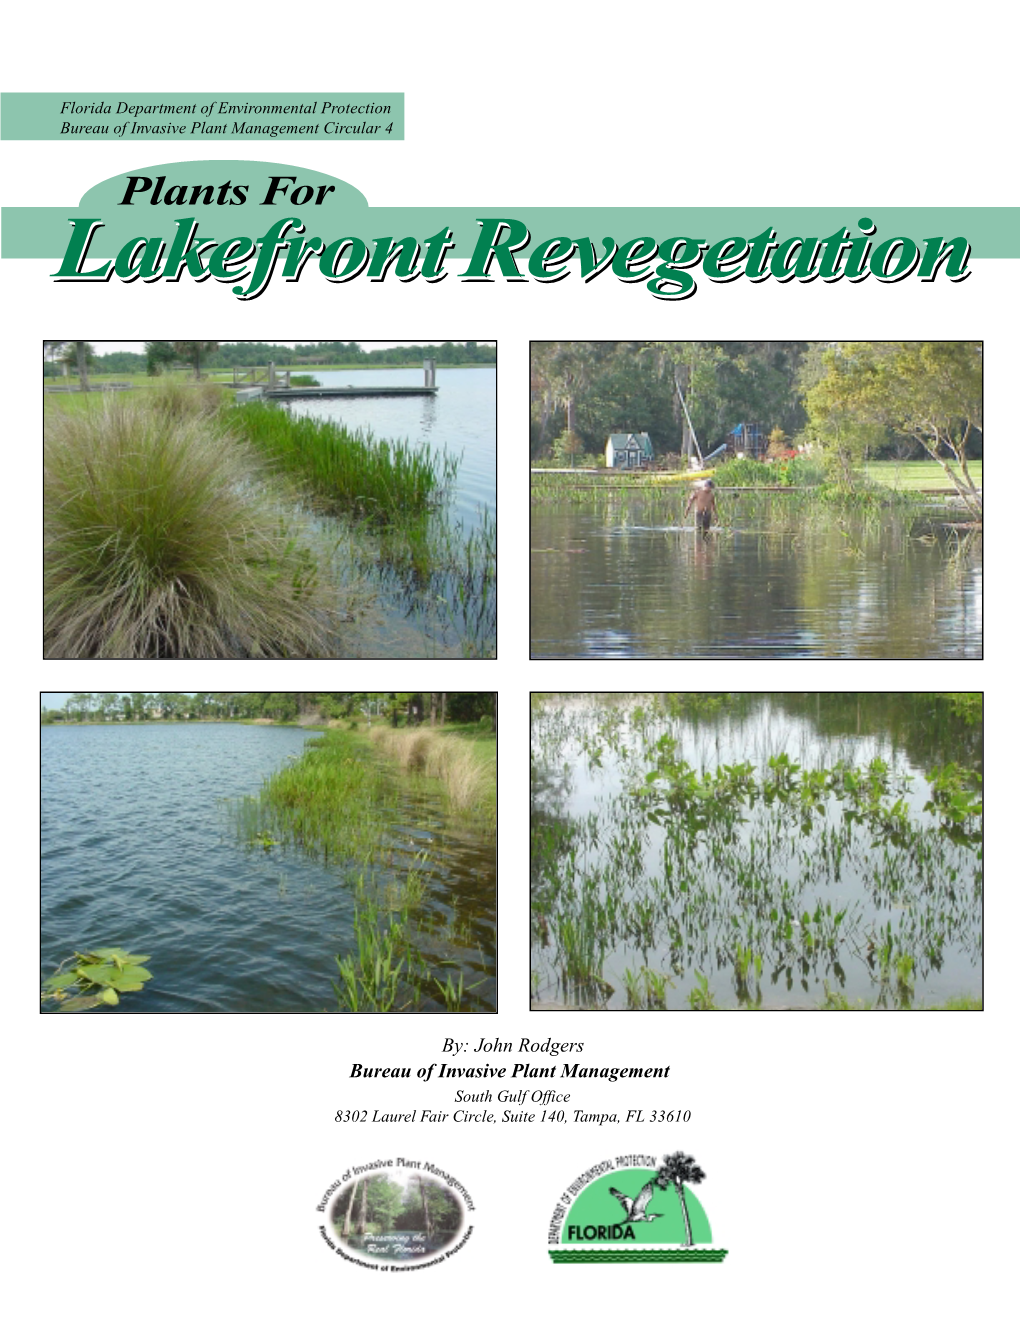 Plants for Lakefront Revegetation” by John Rodgers